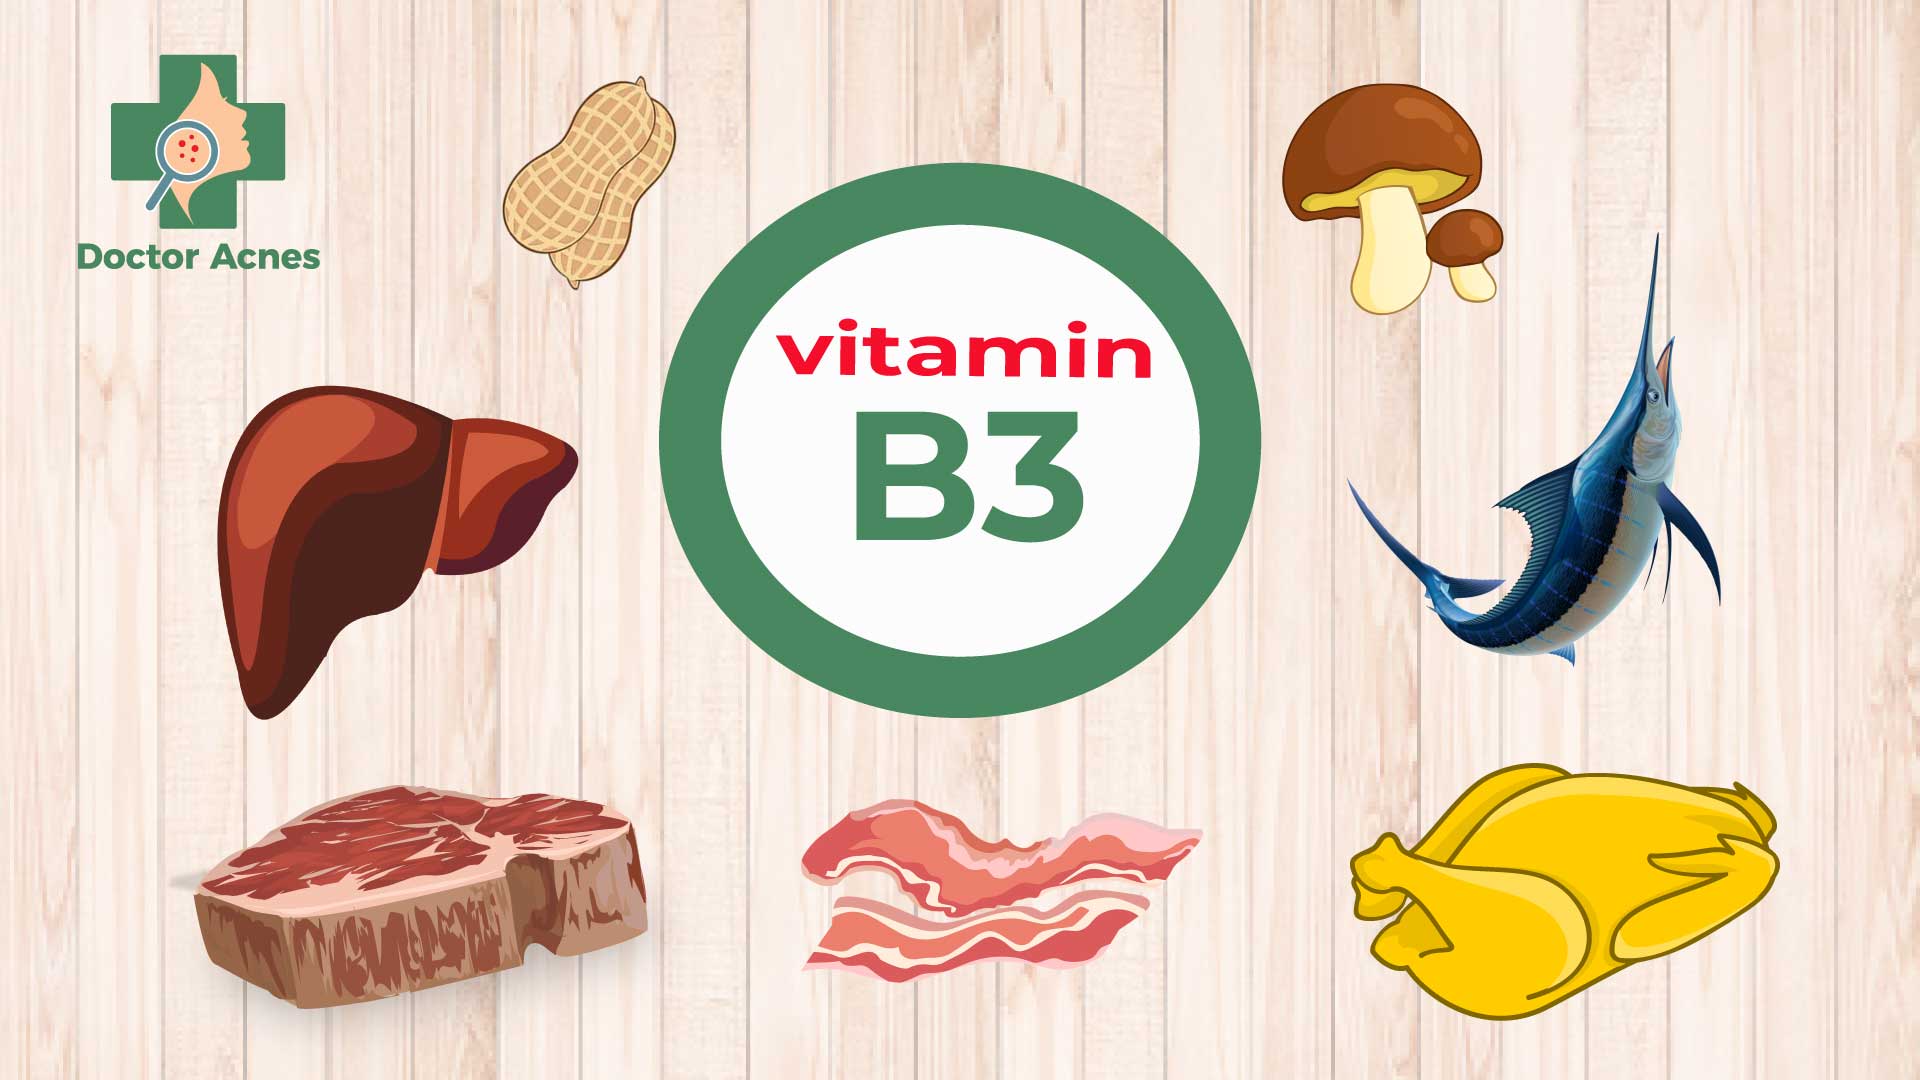 Cung cấp vitamin B3 từ thức ăn - Doctor Acnes